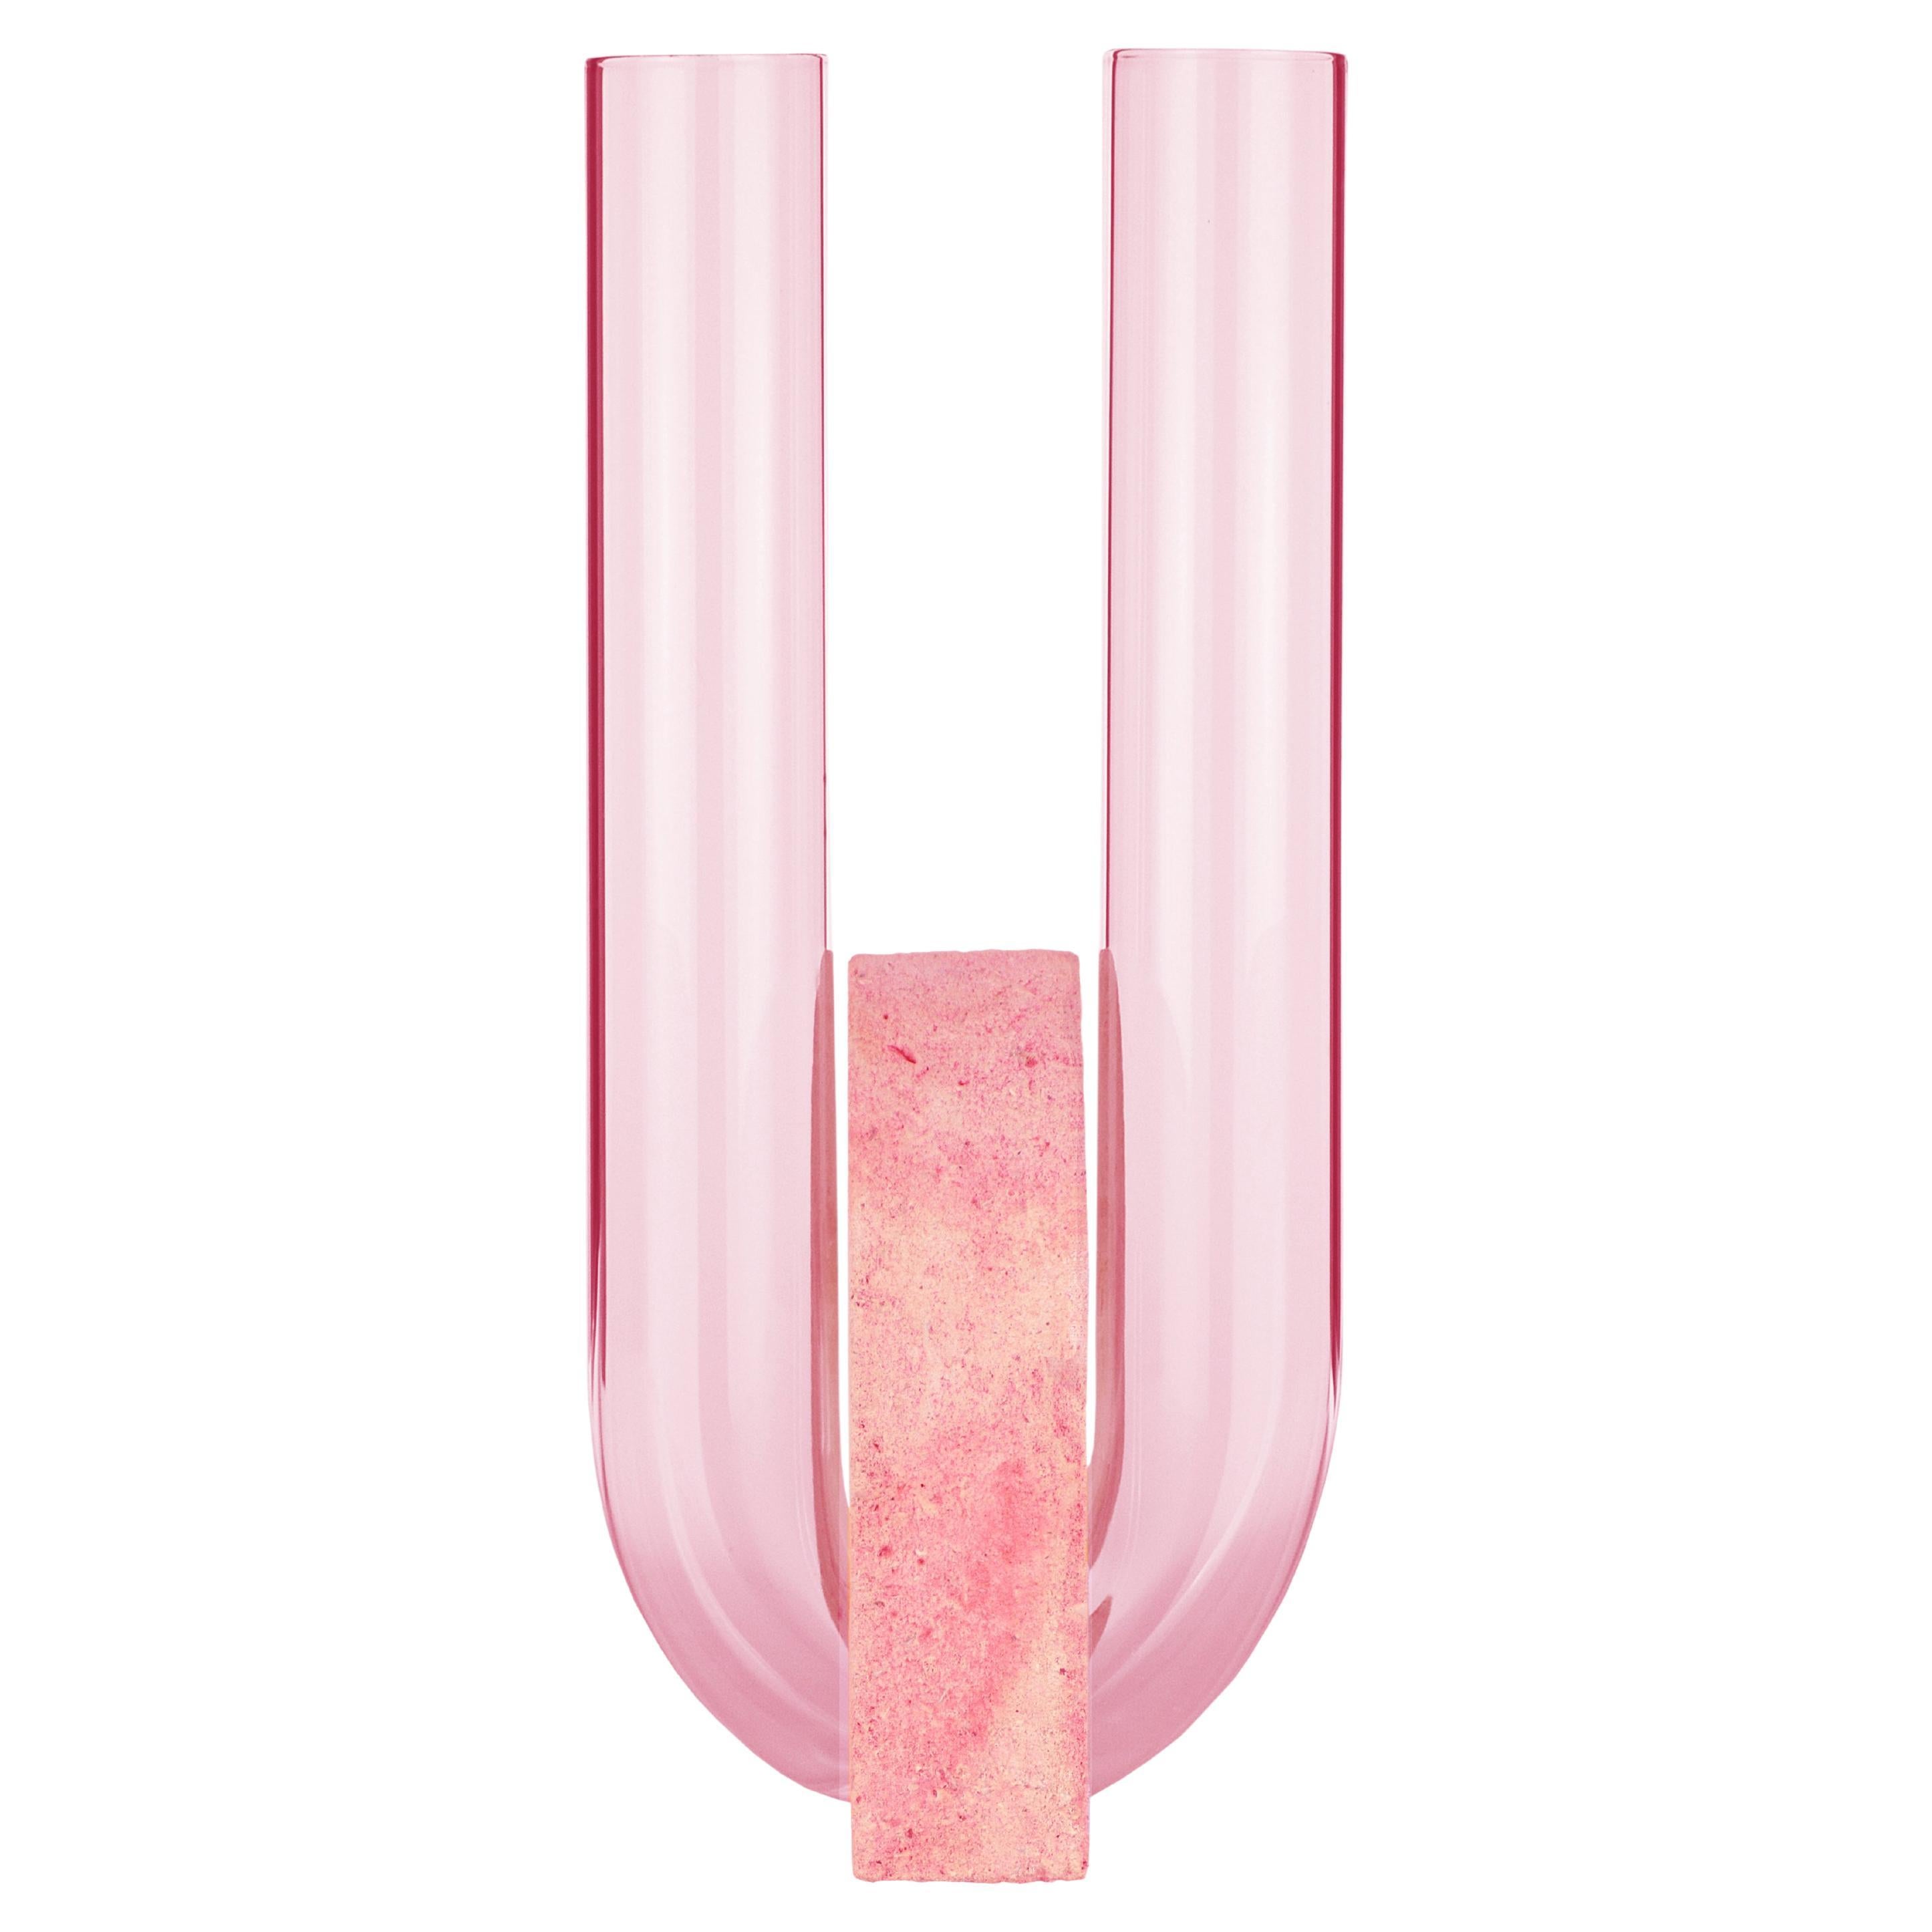 Pink-Pink Cochlea Della Liberazione Soils Edition Vase by Coki Barbieri For Sale